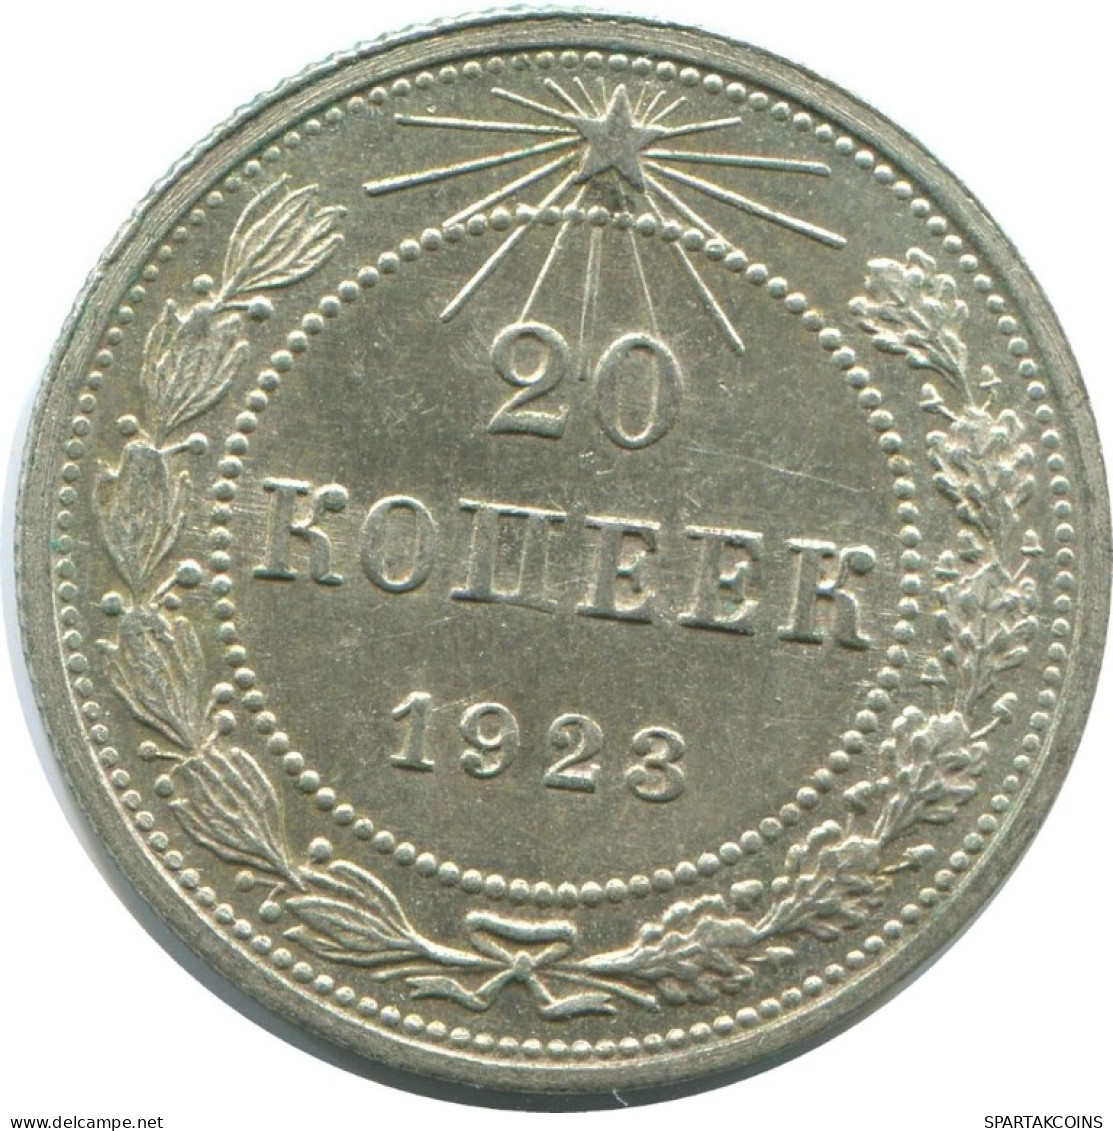 20 KOPEKS 1923 RUSSLAND RUSSIA RSFSR SILBER Münze HIGH GRADE #AF691.D.A - Rusia